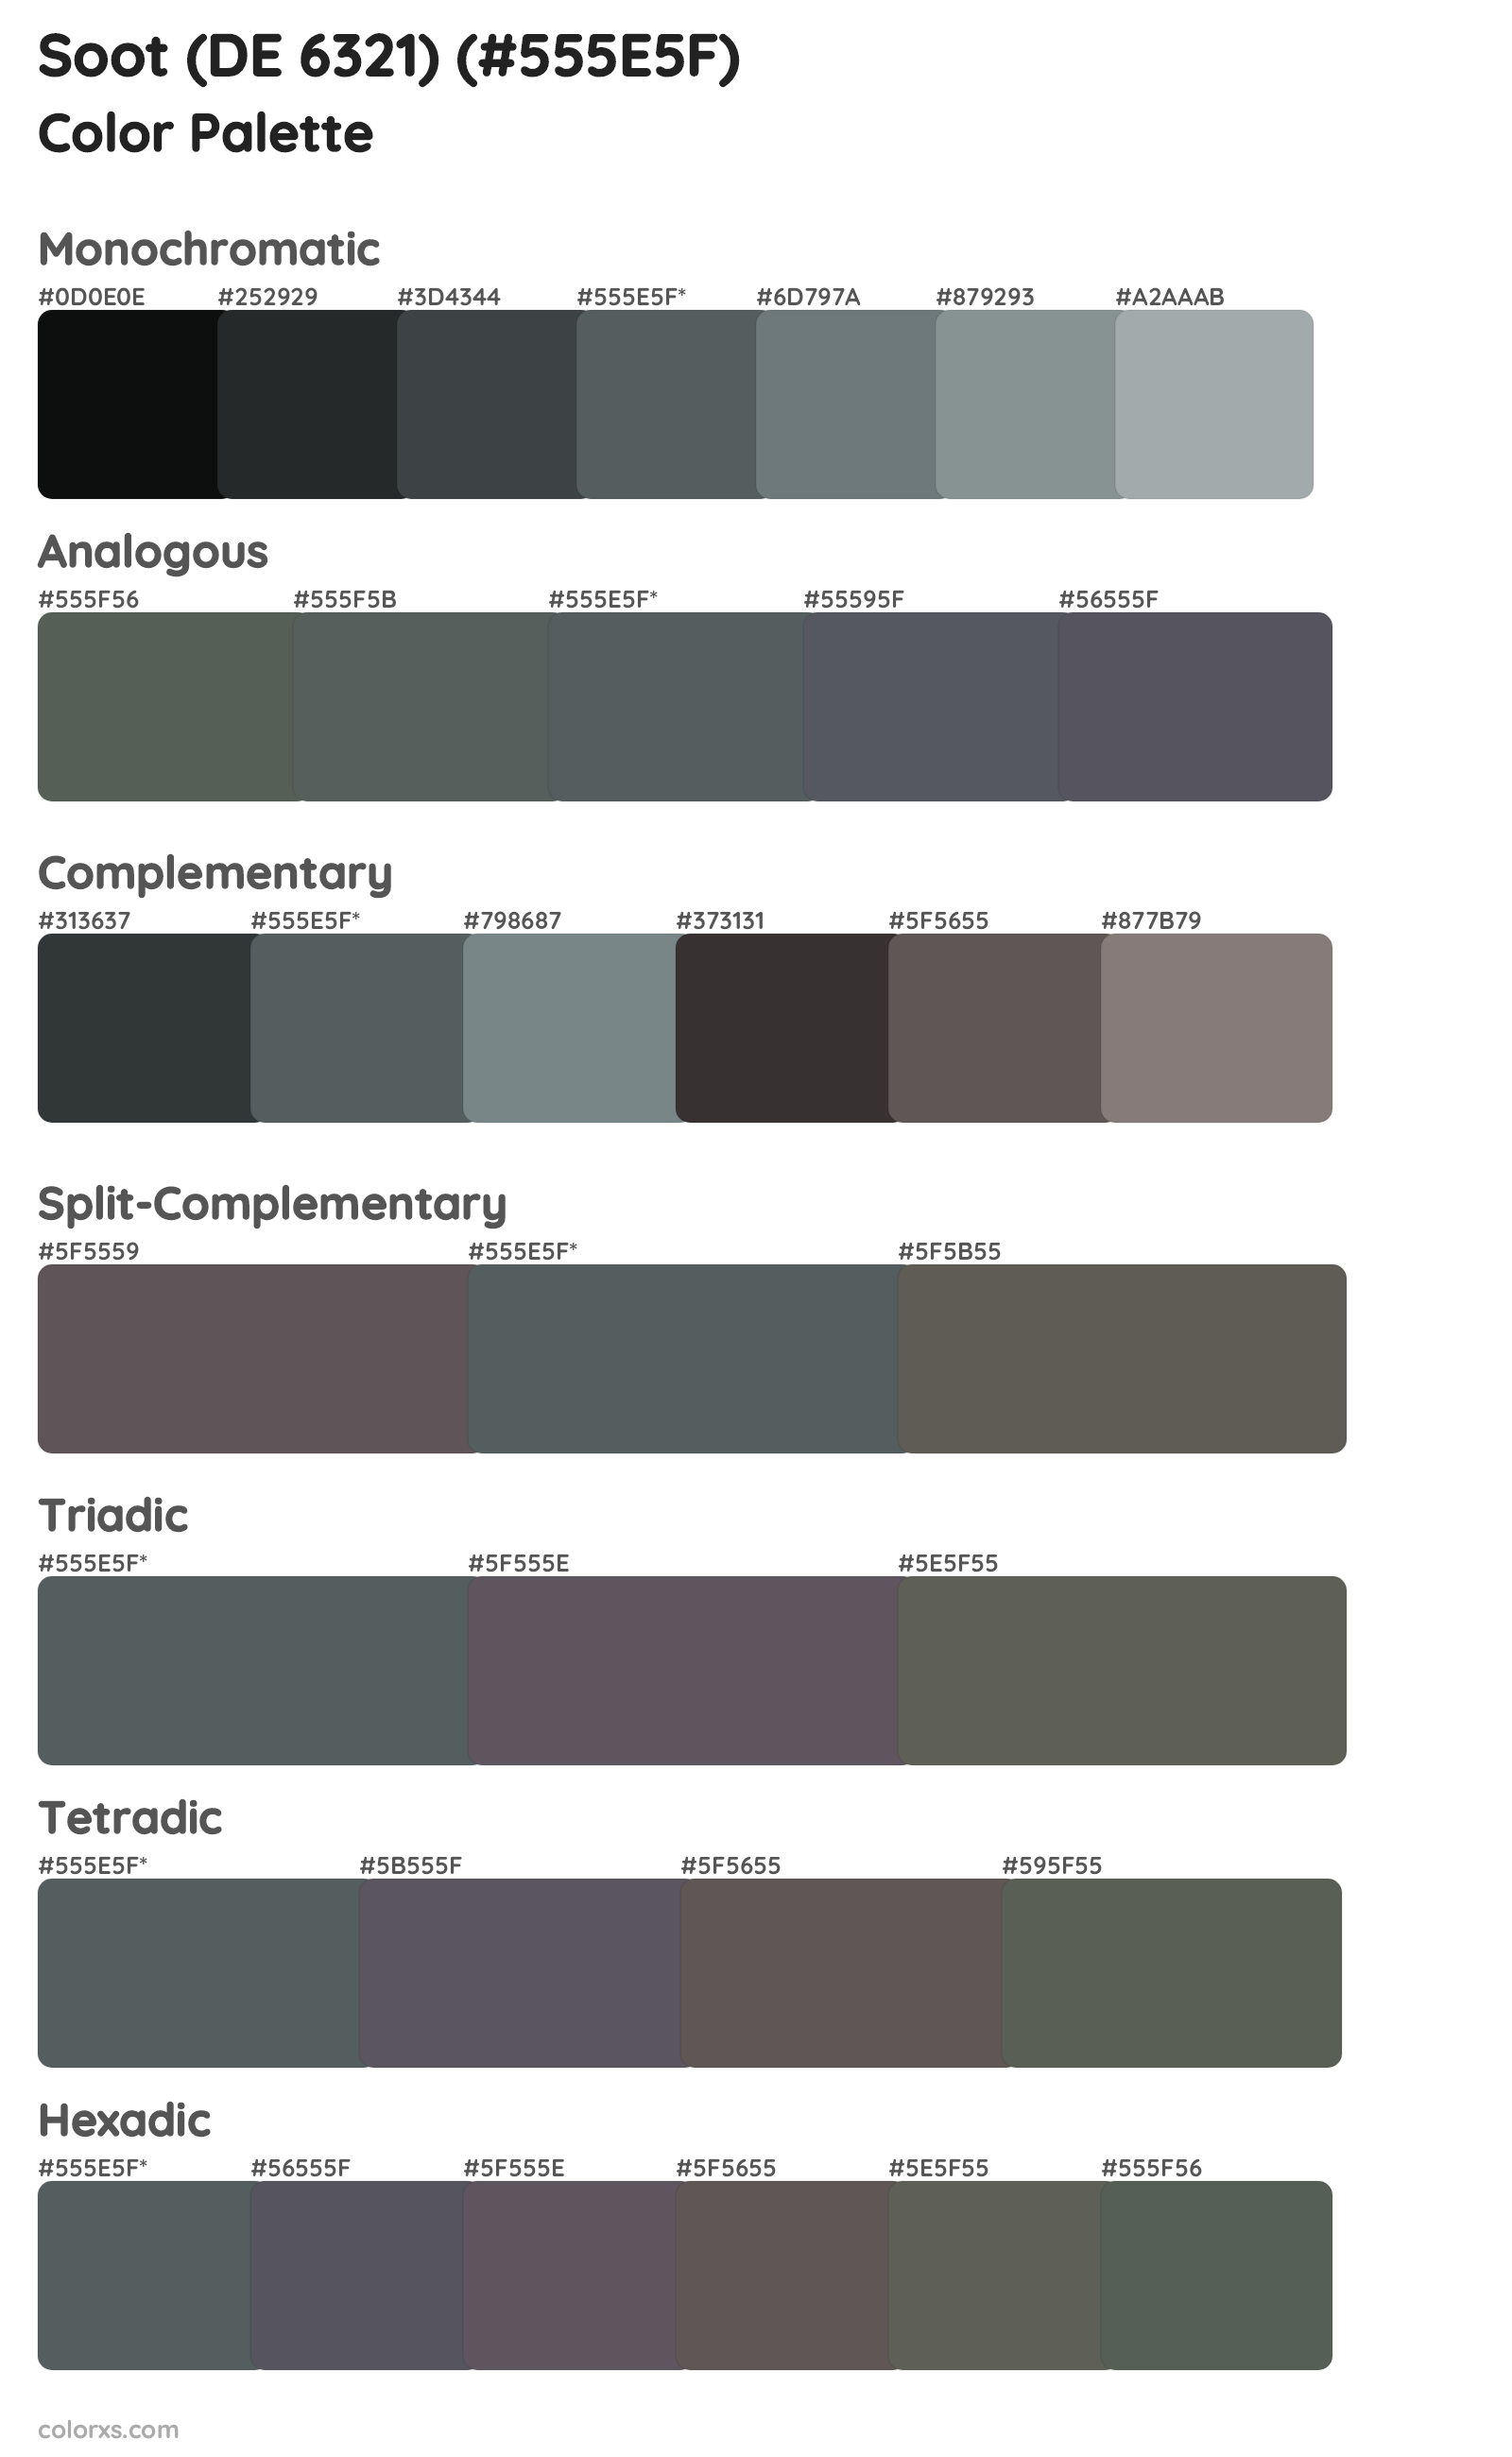 Soot (DE 6321) Color Scheme Palettes